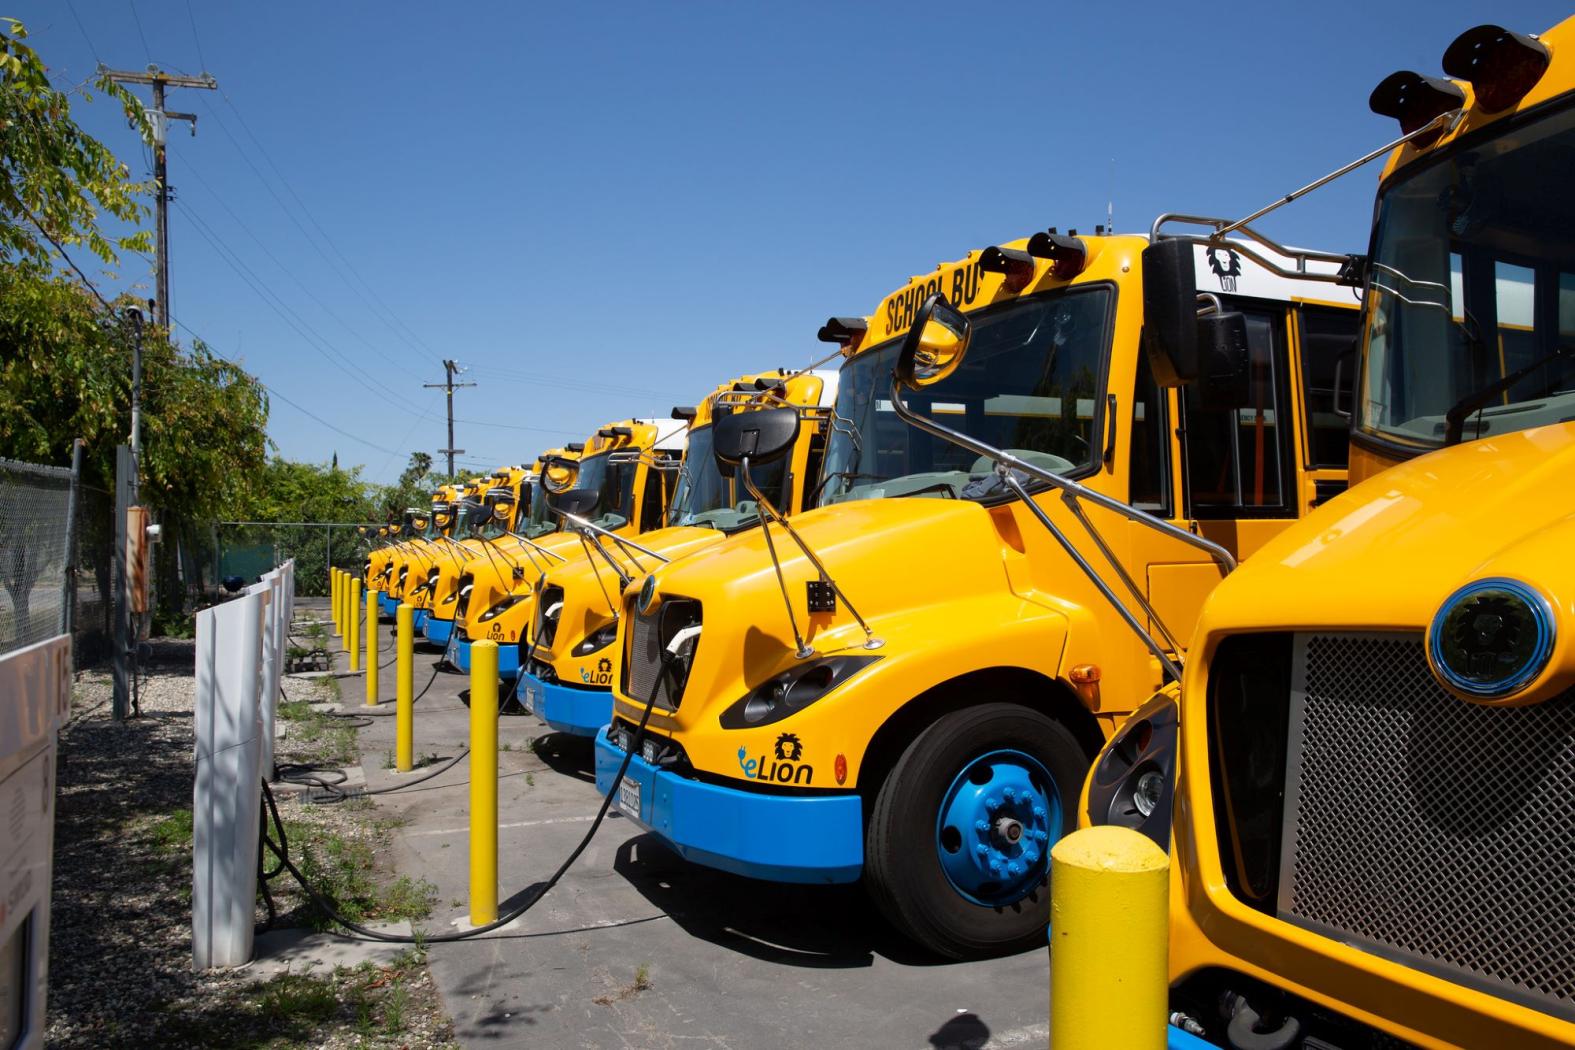 カリフォルニア州ツインリバーズ学区の電気バスは充電のためにコンセントに接続されています。 大規模な公共車両にとって、EV 充電器をどこに設置するかを決定することは、電動化への最大のハードルの XNUMX つとなる可能性があります。 カリフォルニアエネルギー委員会/Flickrによる写真